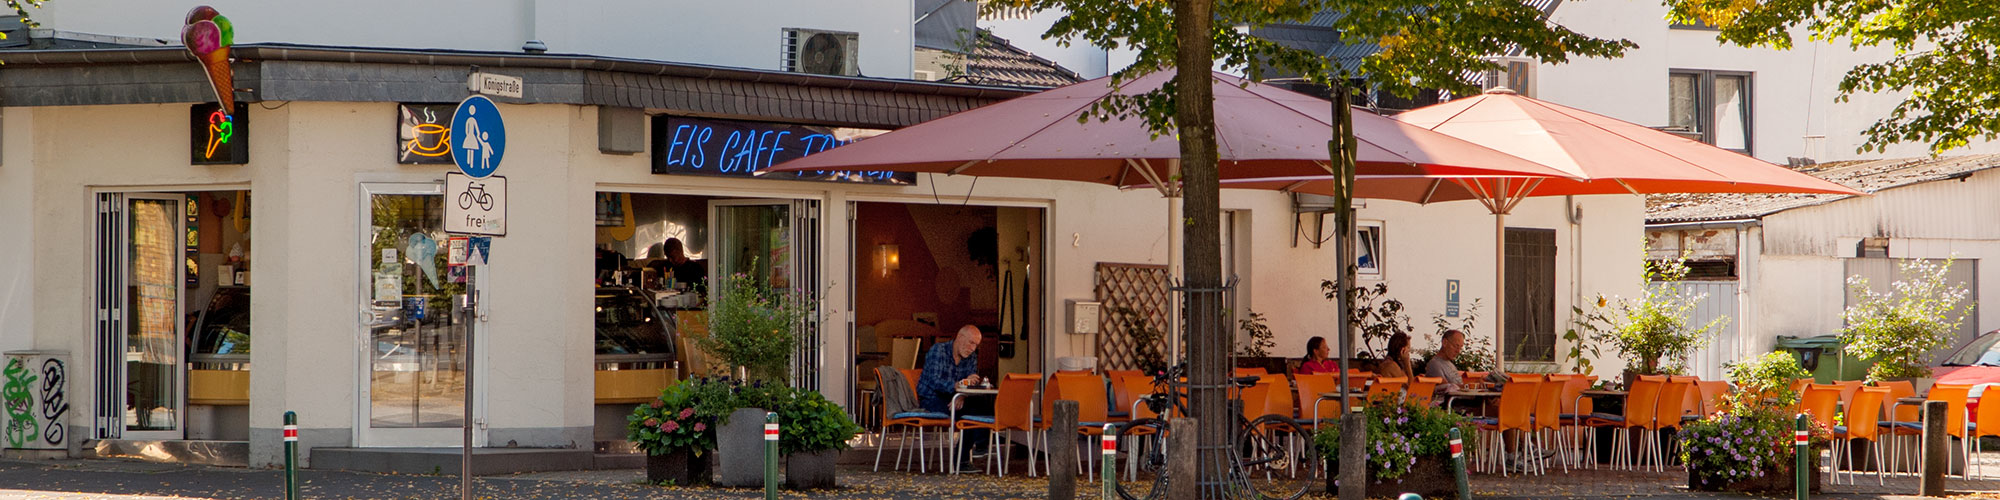 Eiscafé Tormen in Hennef